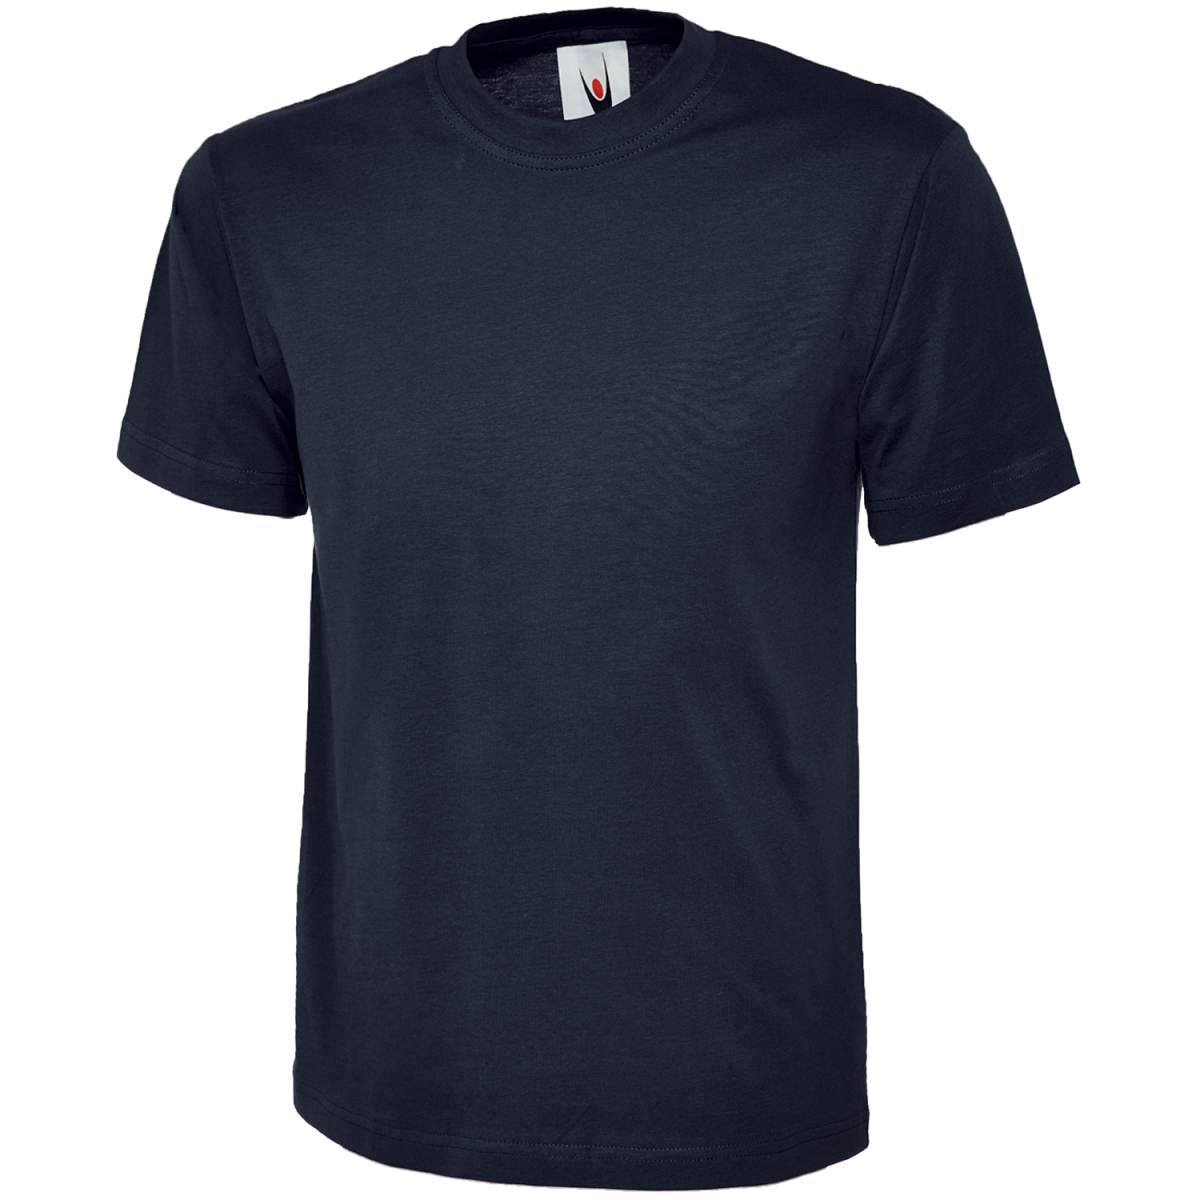 Moderne und ergonomische T-Shirts Modell ULRICH - elysee, 4,49 €